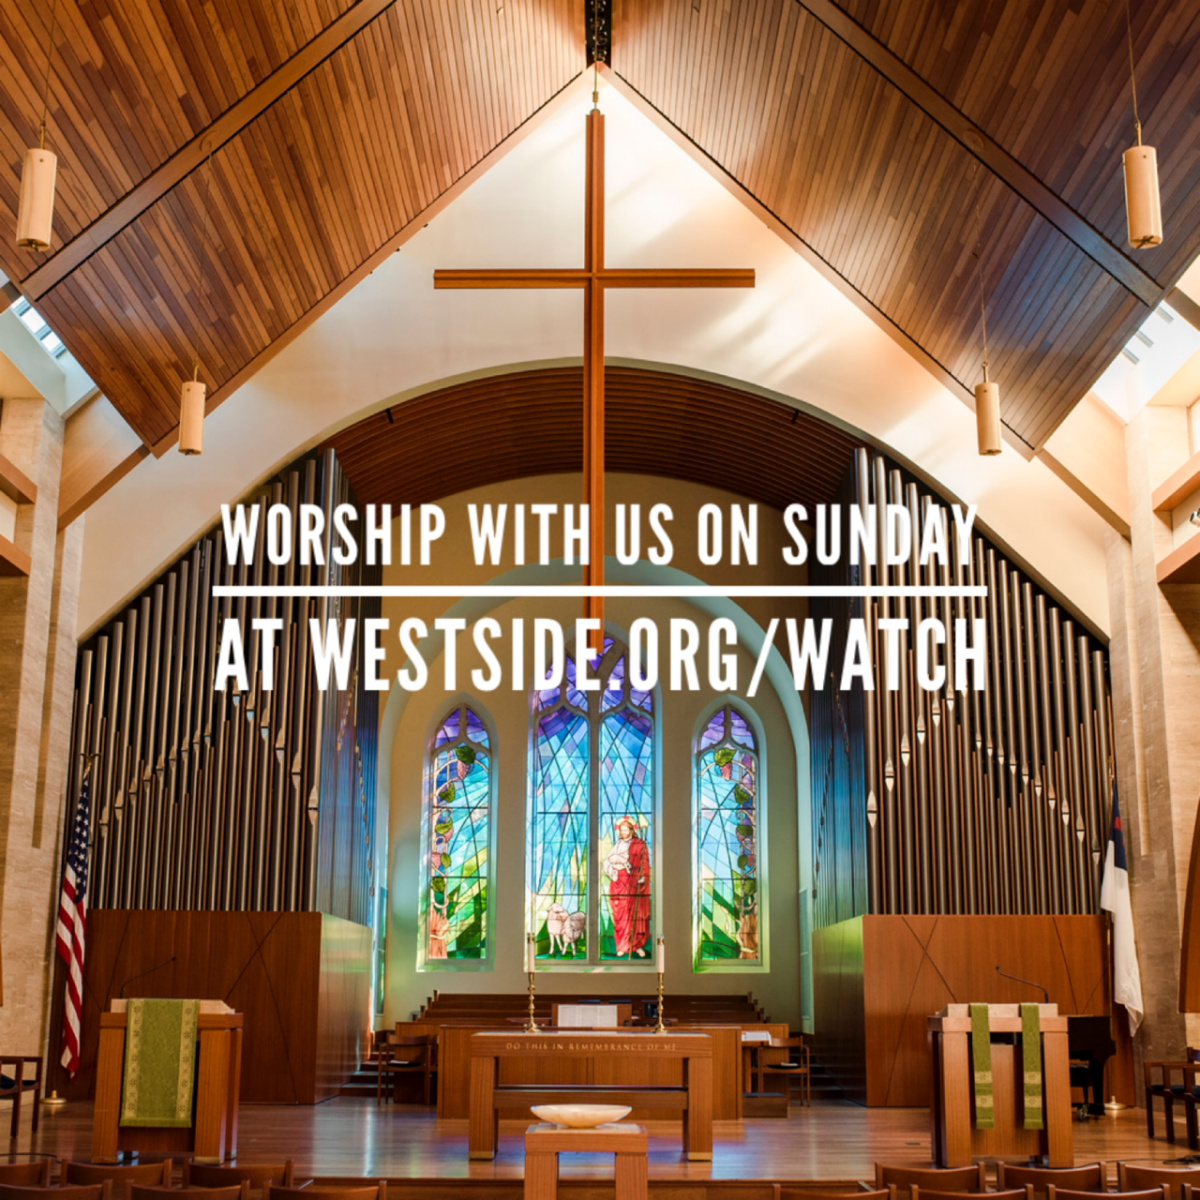 Sunday Worship Online